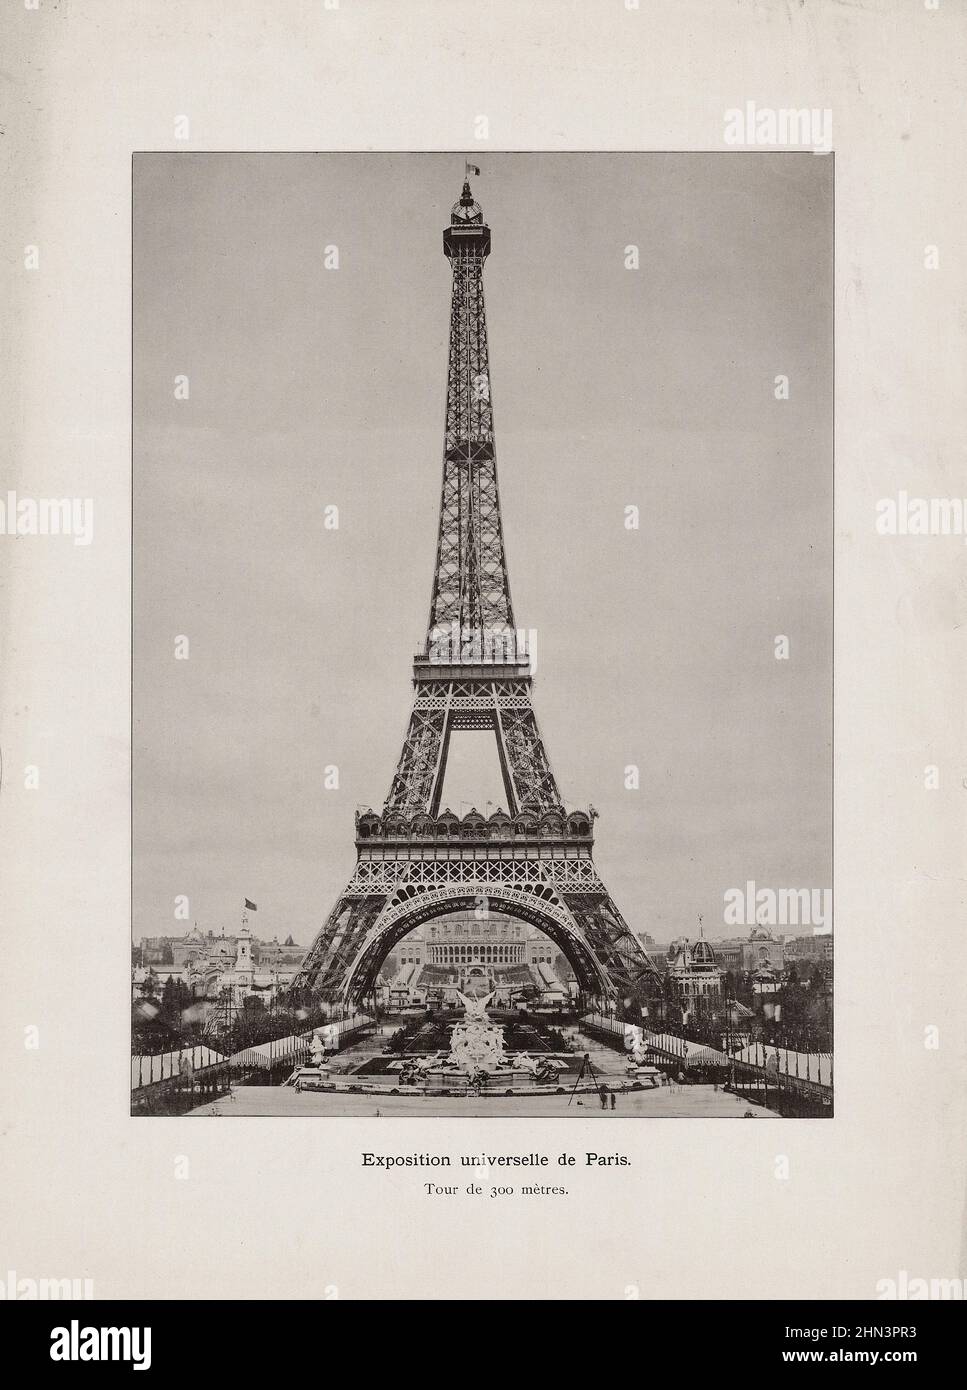 Photo d'époque de l'exposition universelle de Paris vue sous la Tour Eiffel. 1889 Banque D'Images